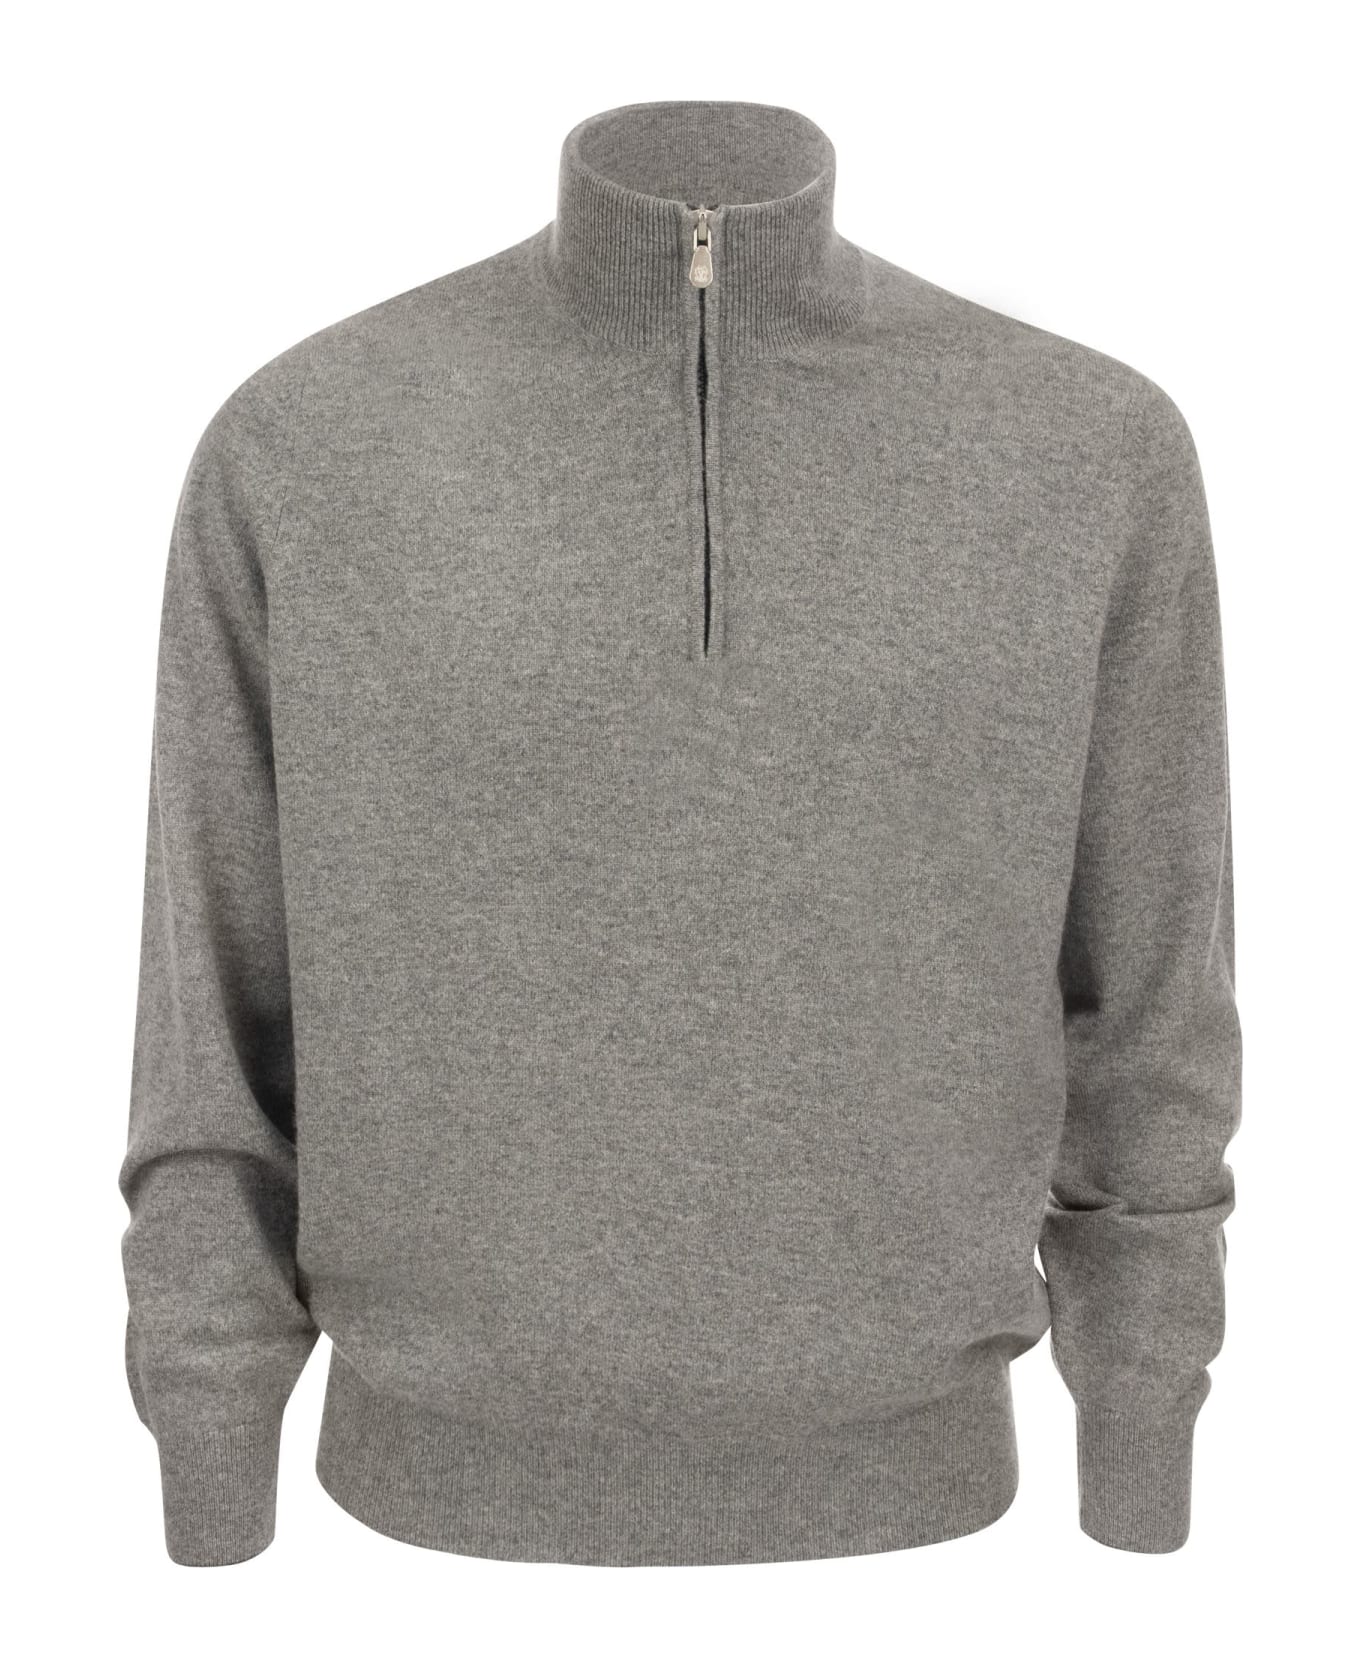 Brunello Cucinelli Cashmere Turtleneck Sweater With Zip - Grey Melange